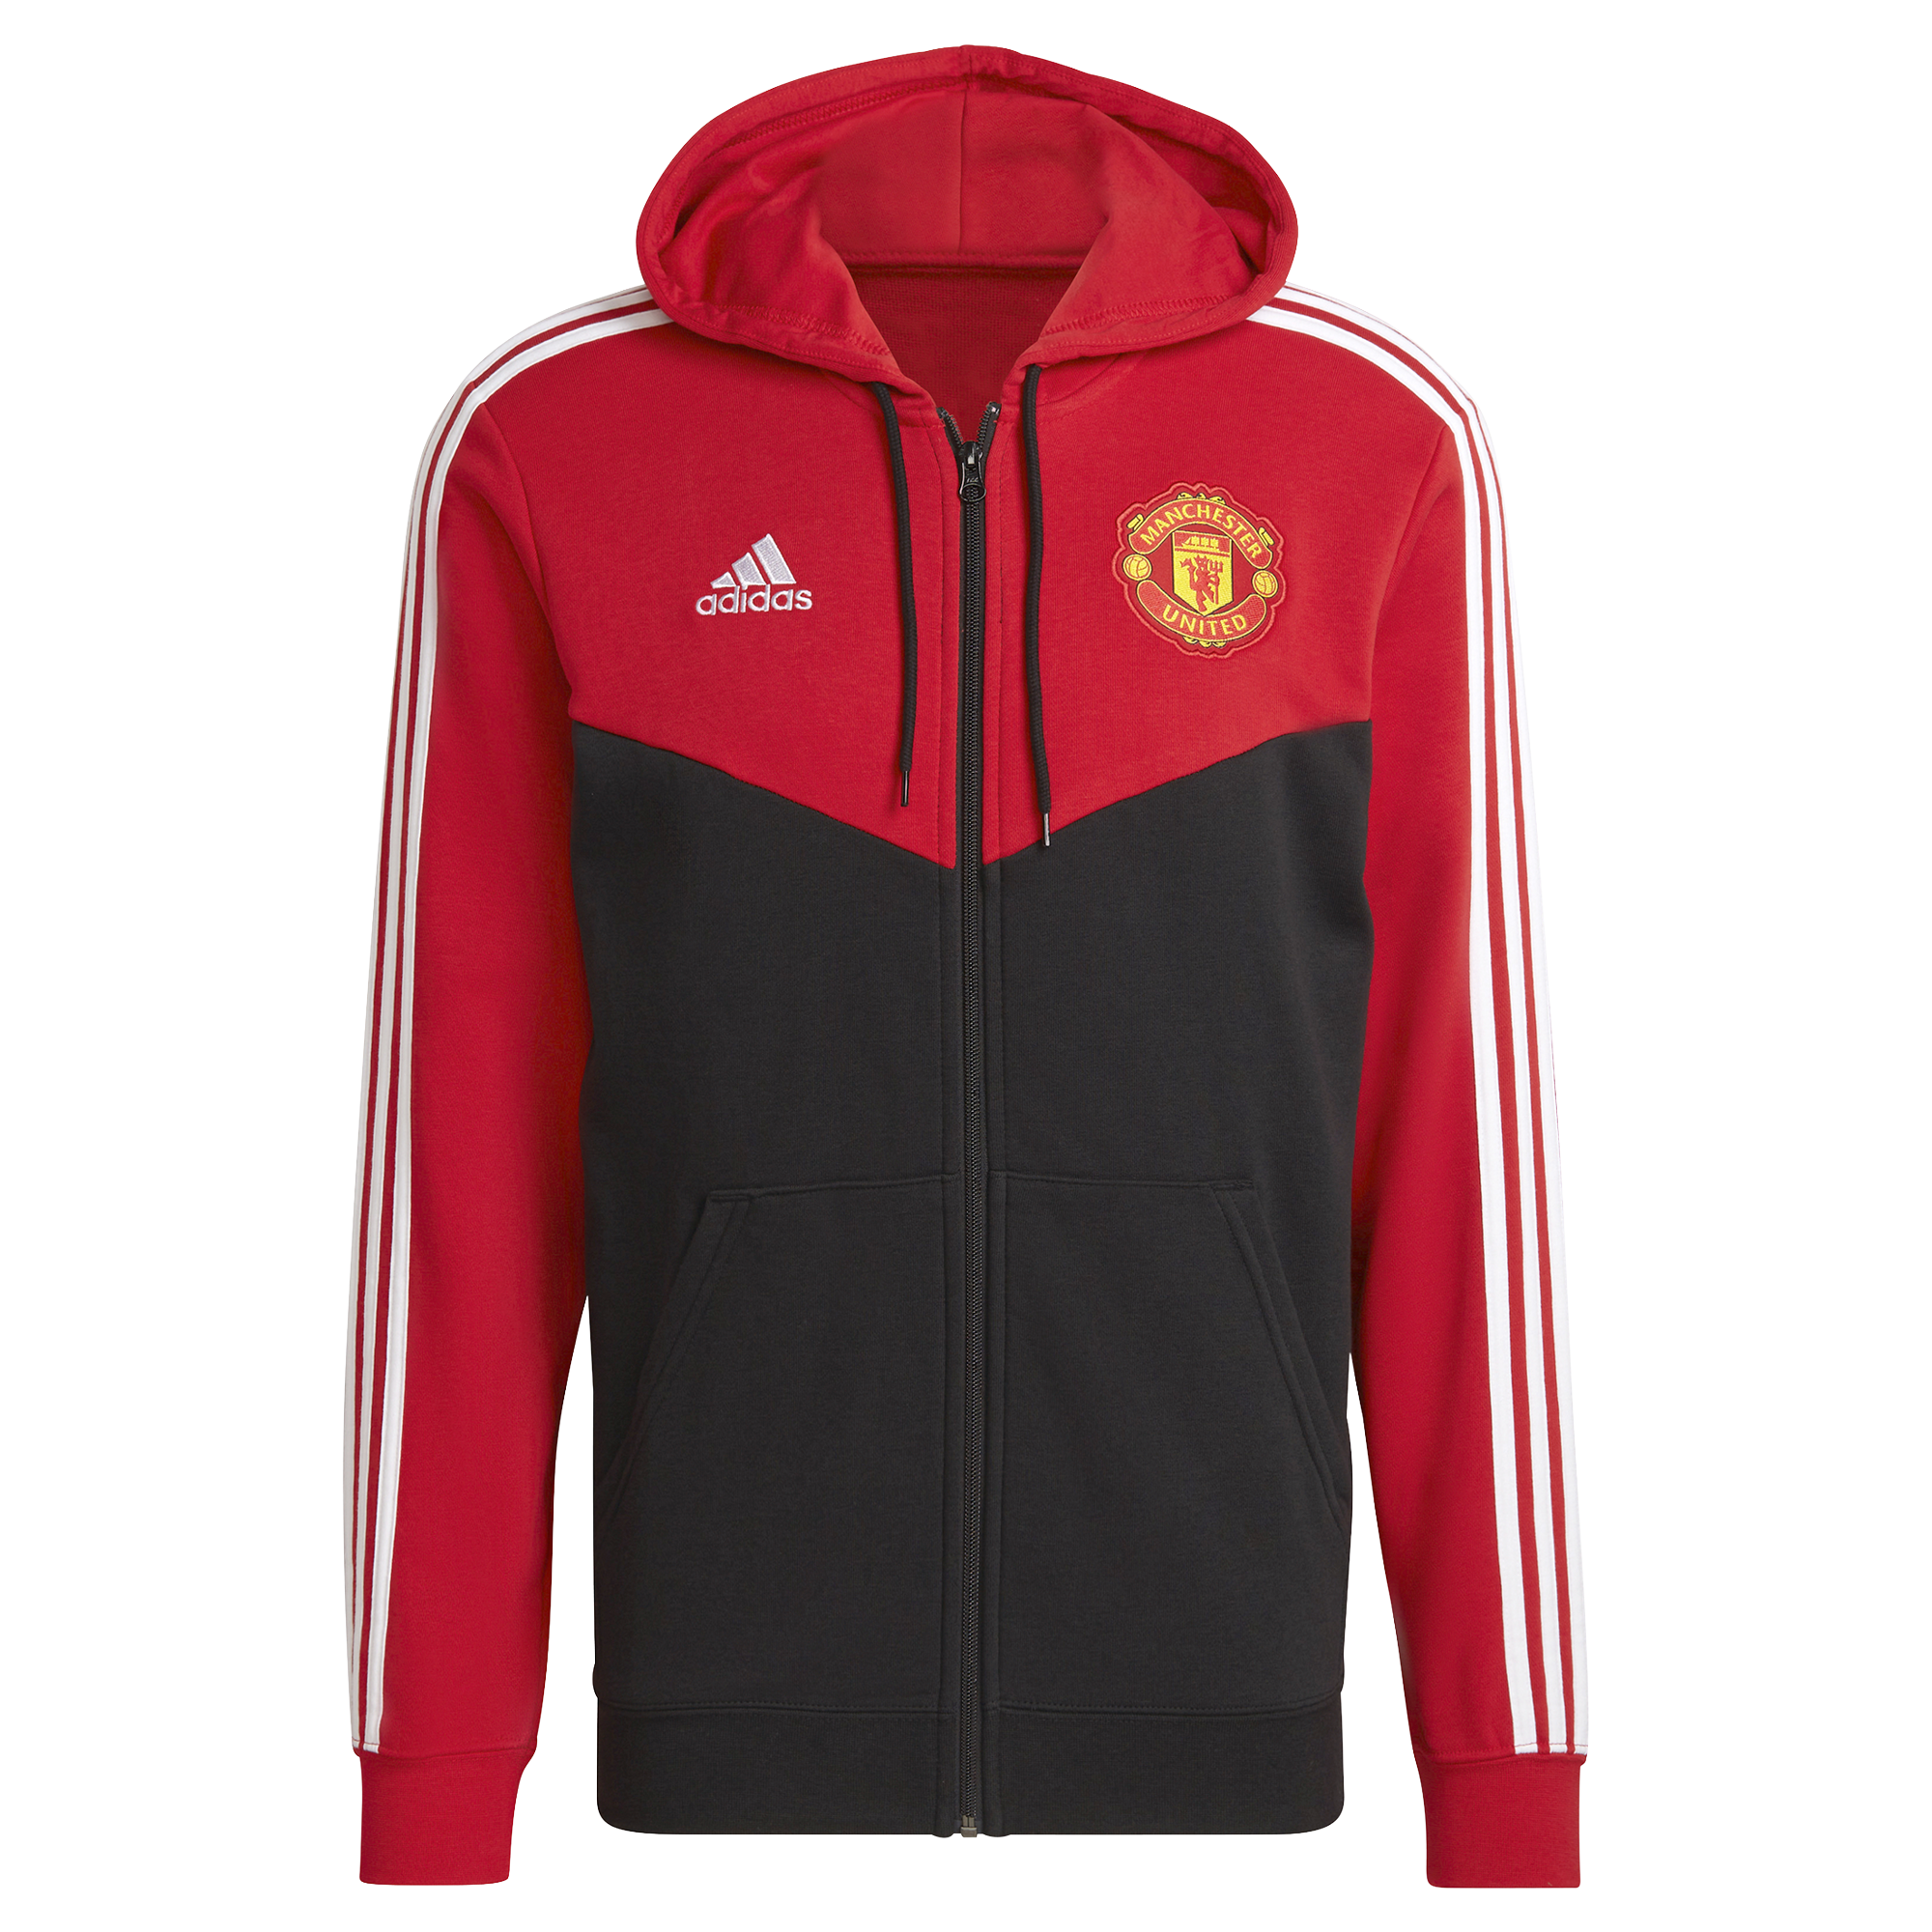 Adidas Manchester United FC 3S červená/černá UK S Pánské